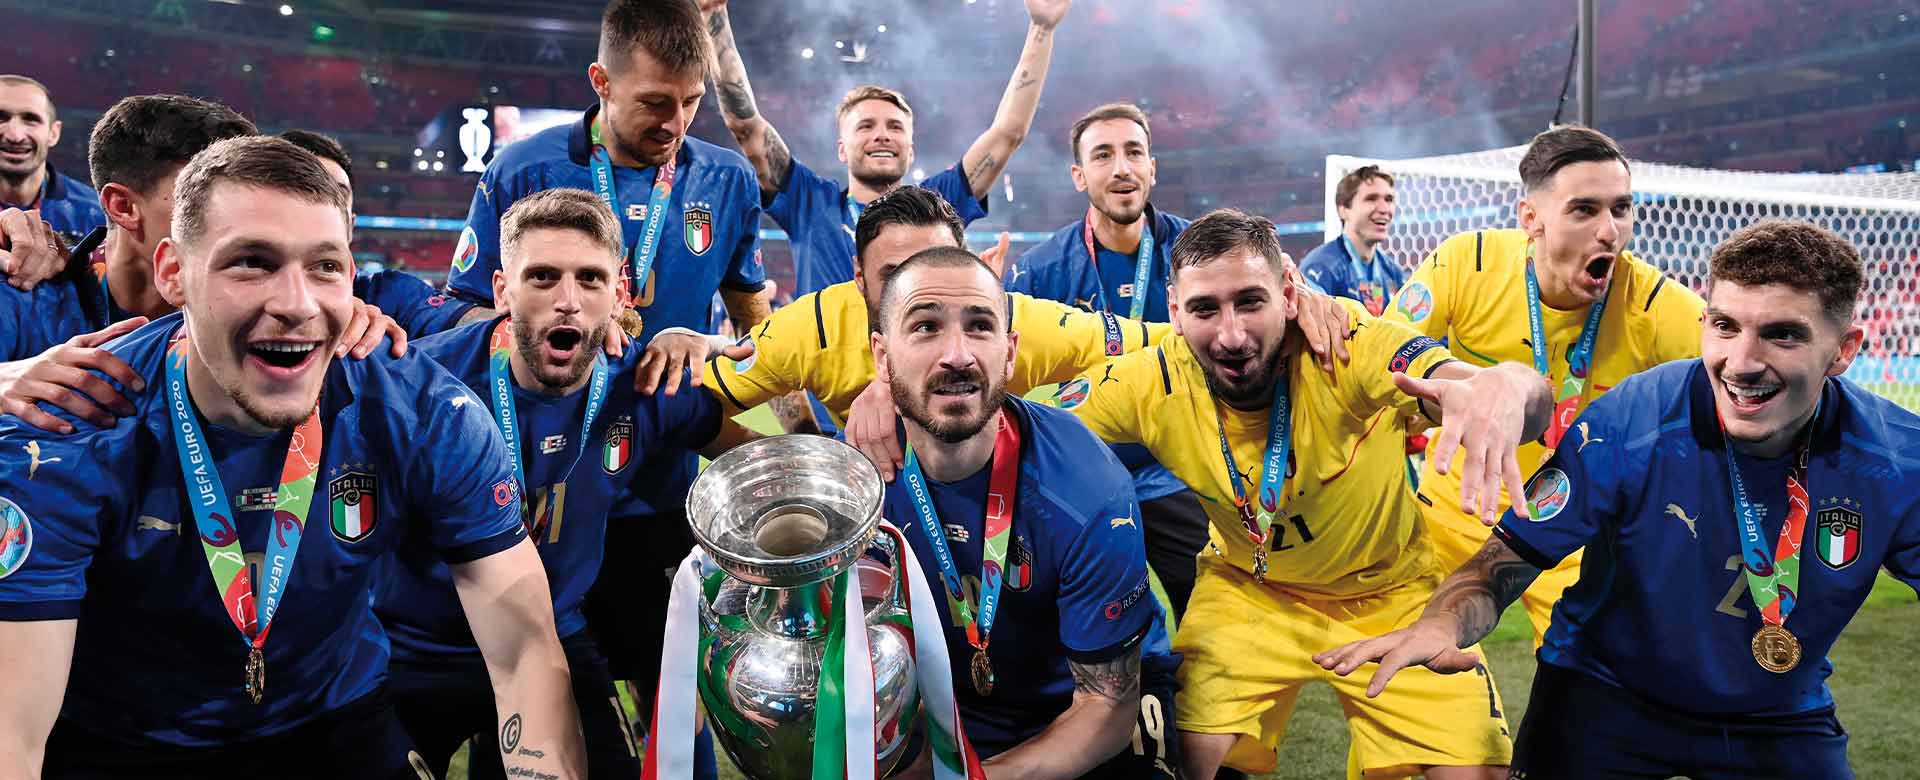 Immagine dell'11 luglio 2021, a Wembley, la Nazionale italiana vince gli Europei